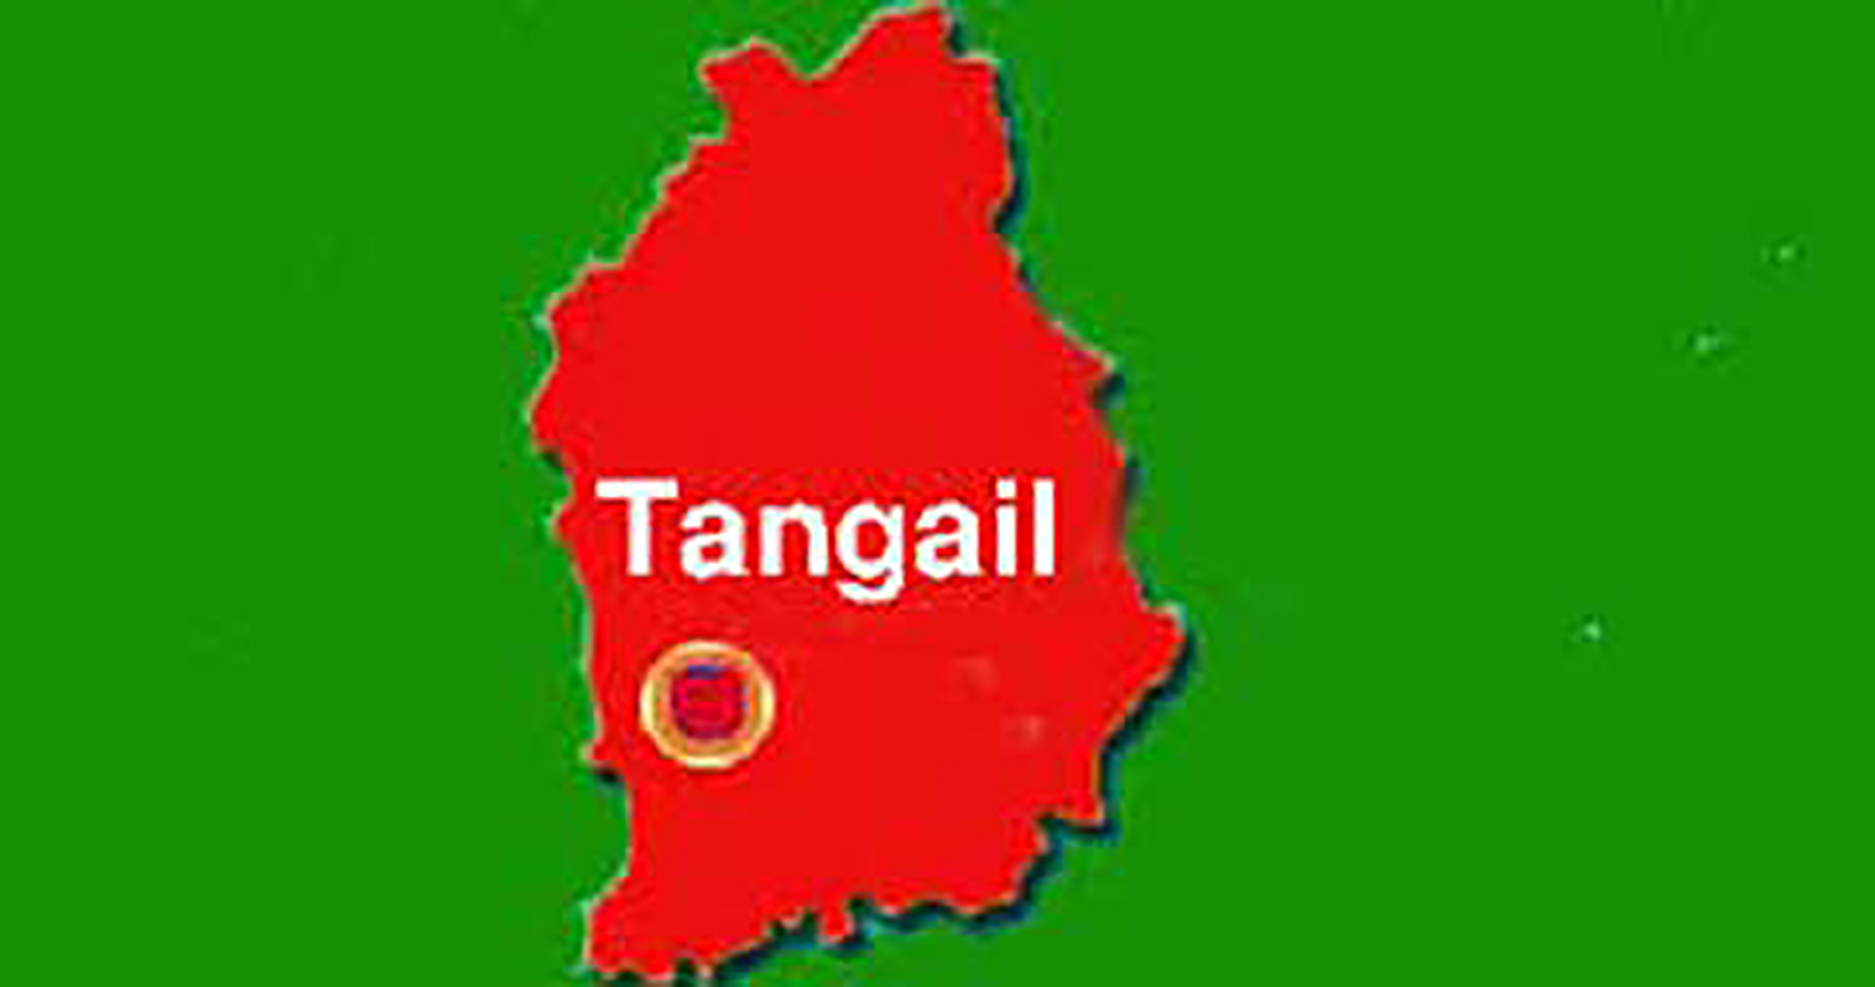 Microbus gas cylinder blast kills three in Tangail